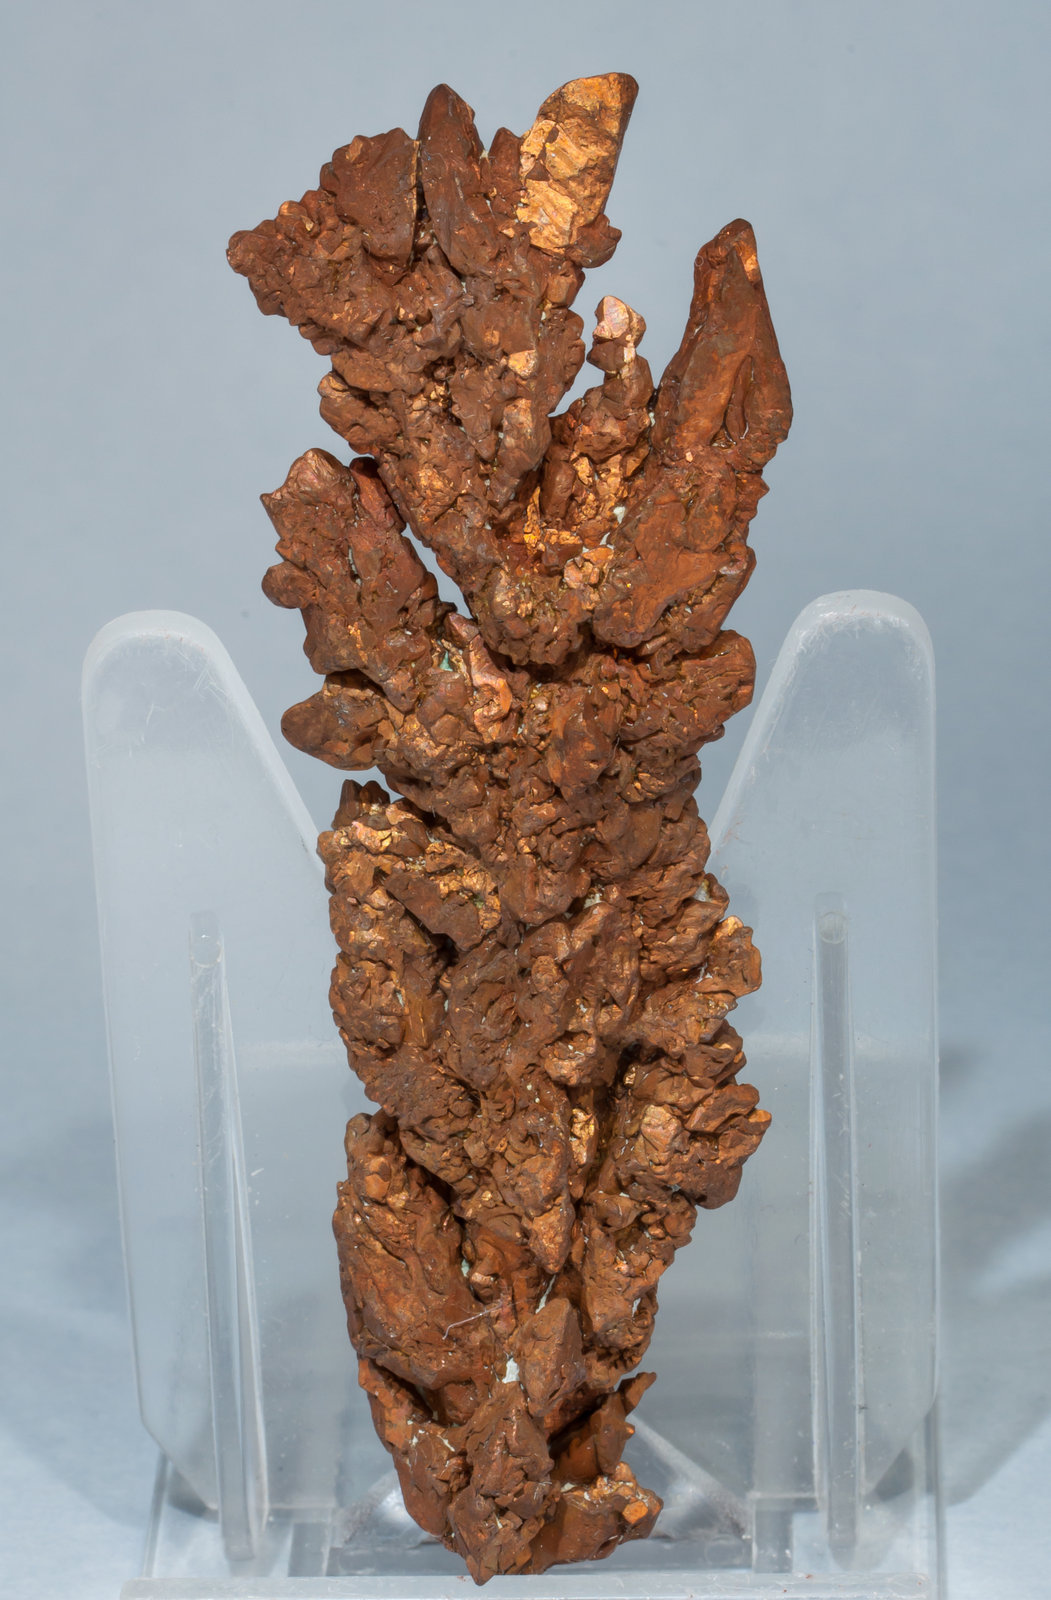 specimens/s_imagesAE8/Copper-TL27AE8f.jpg